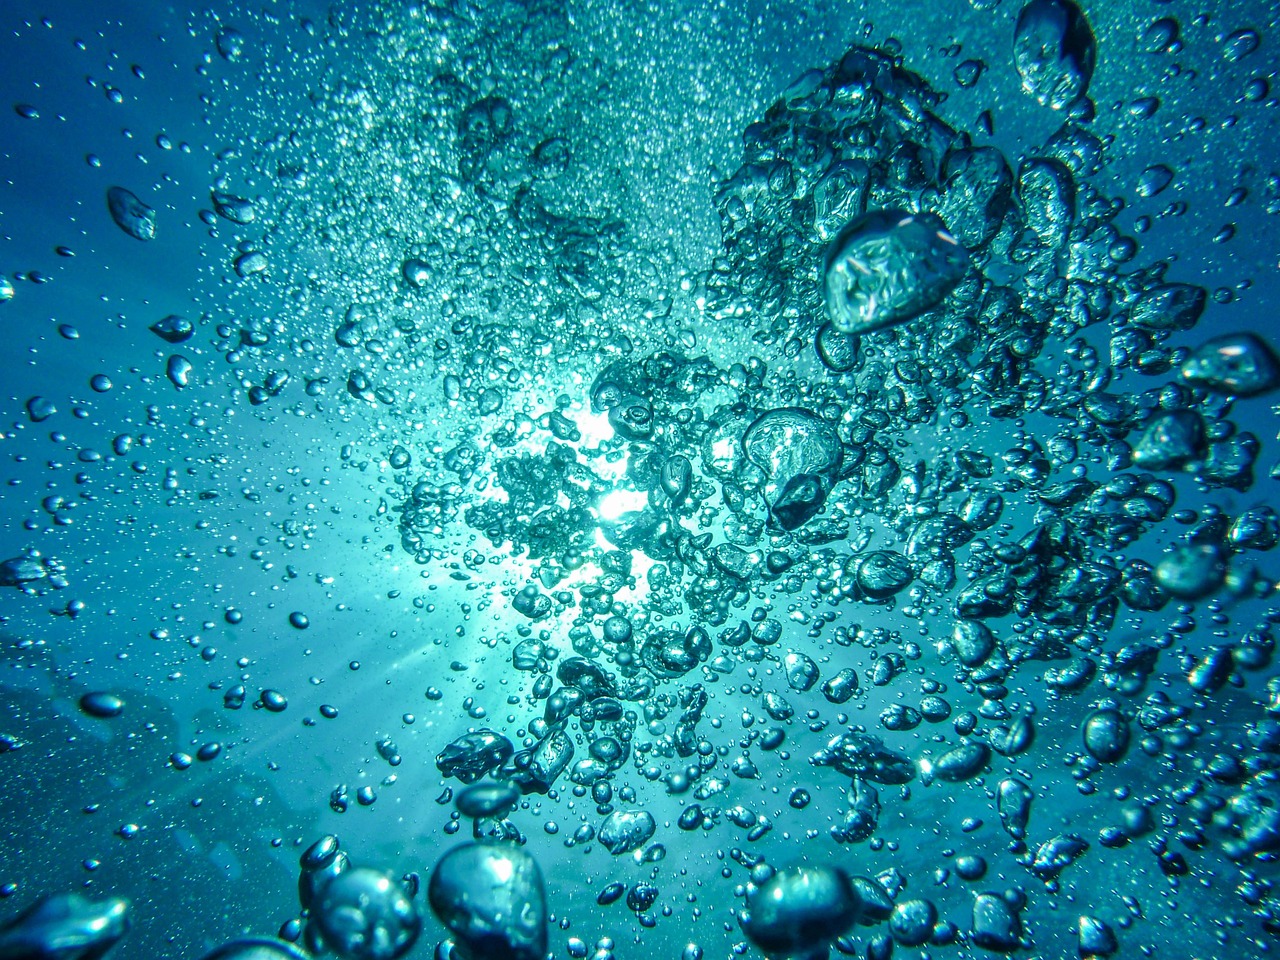 Vattenprov och vattenrening i industriella vattensystem: Vikten av analyser och korrosionskontroll